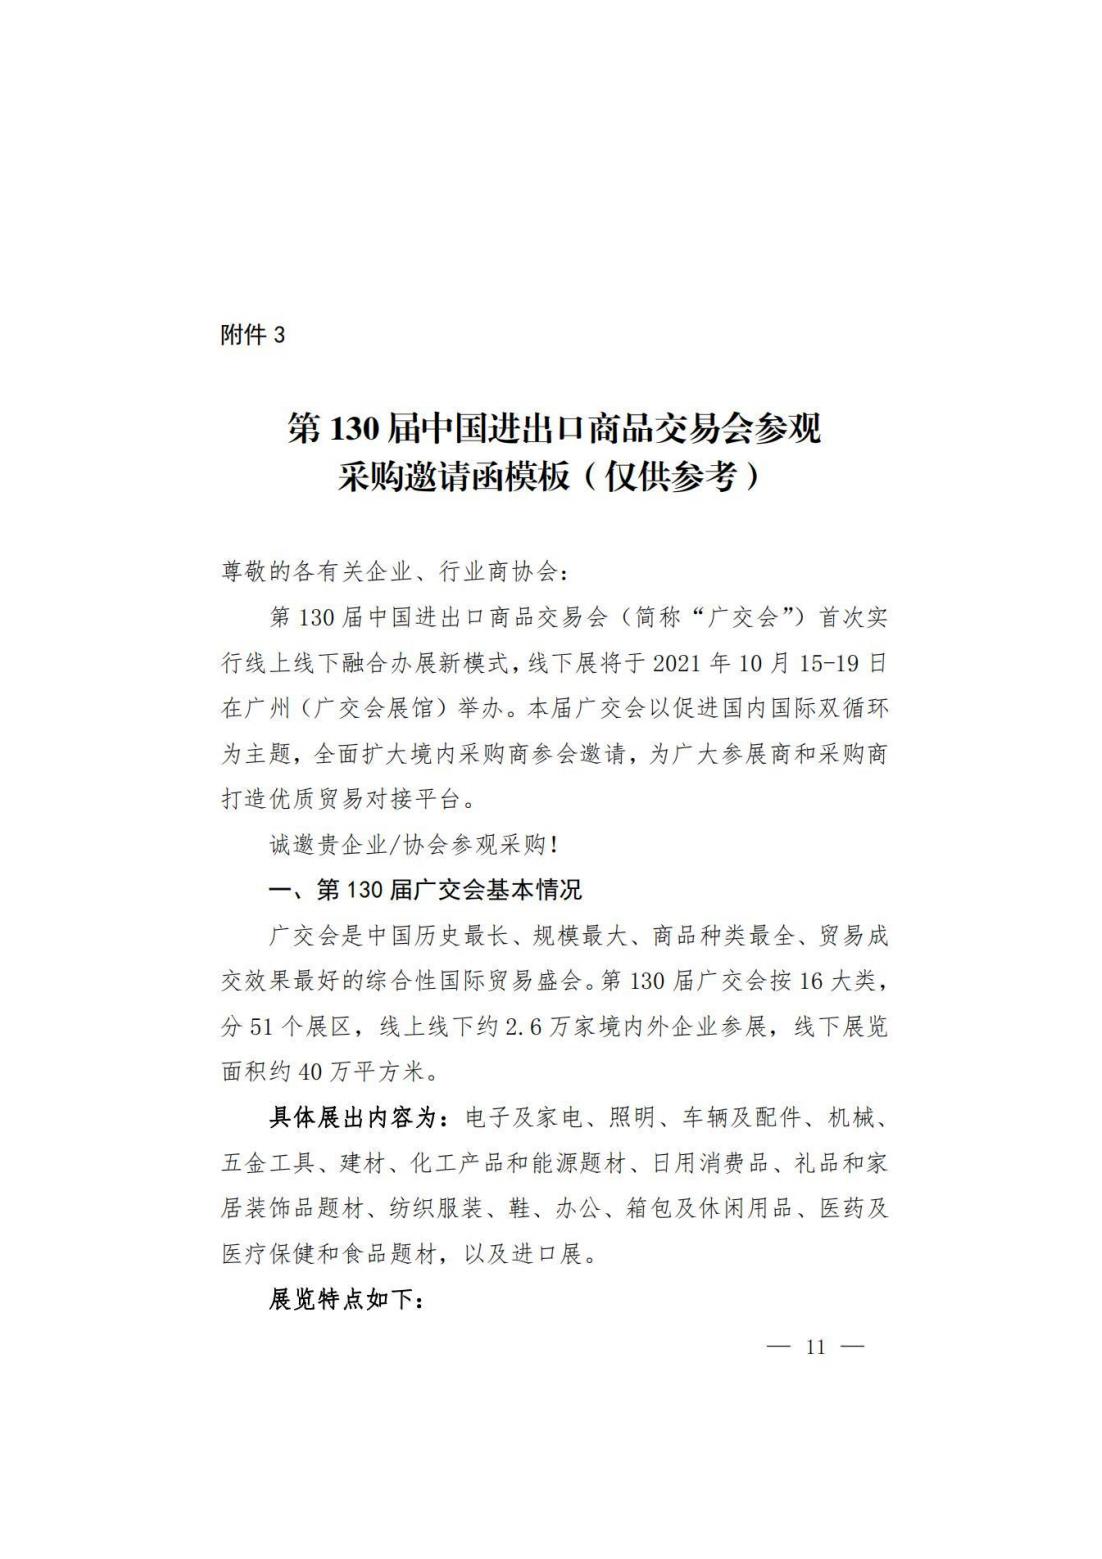 关于转发商务厅《第 130 届中国进出口商品交易会山西省交易团采购商组织实施方案》的通知(图12)